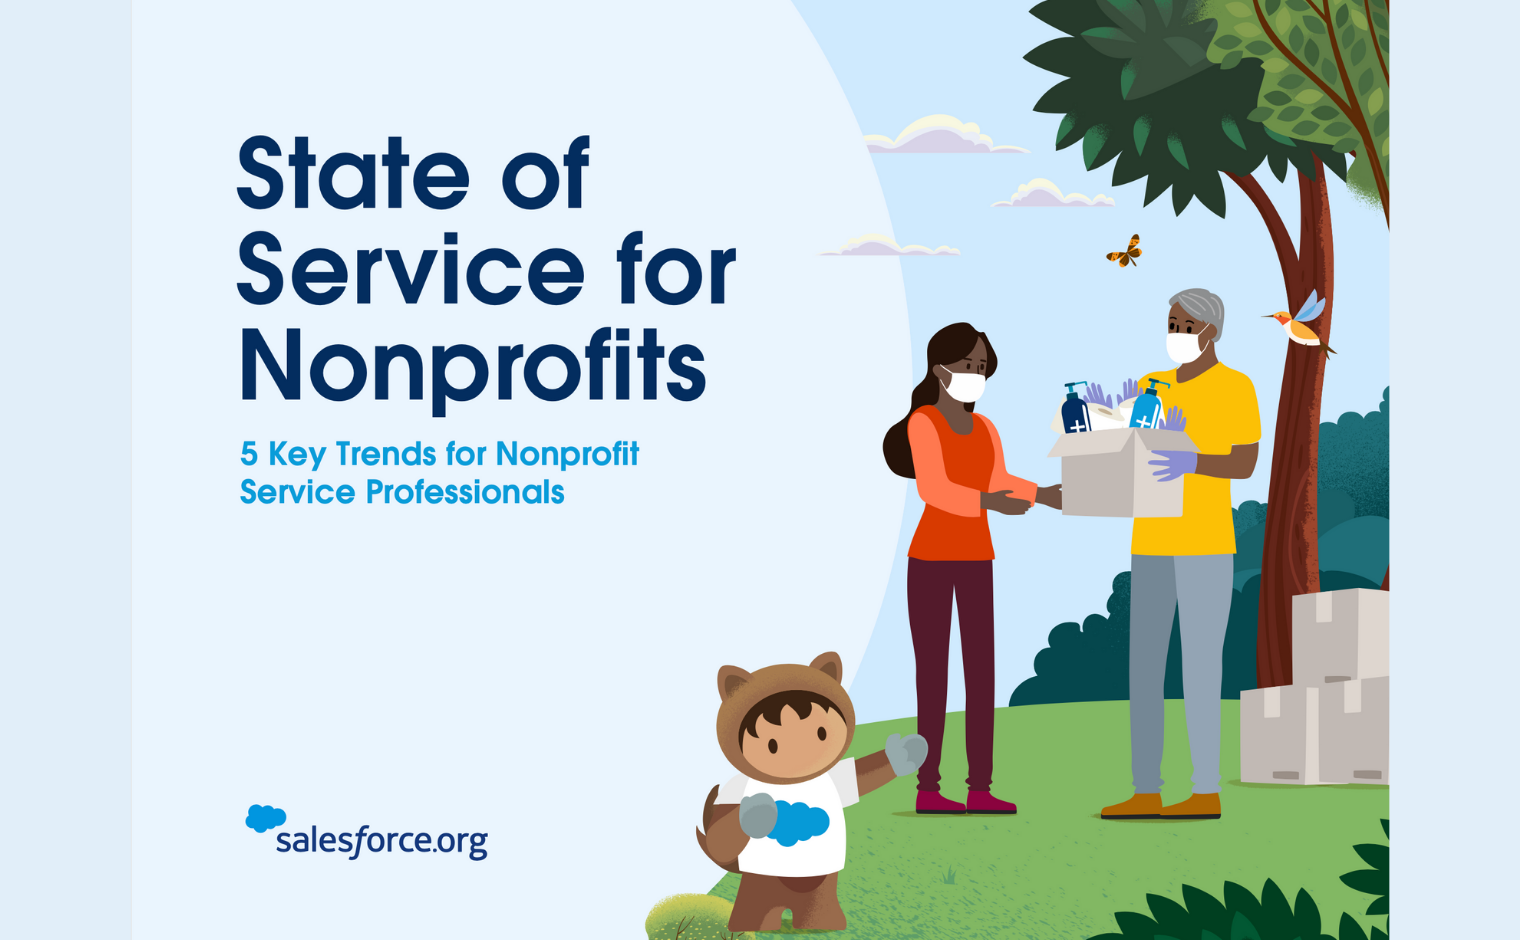 Cover van het whitepaper State of Service for Nonprofits van Salesforce.org.